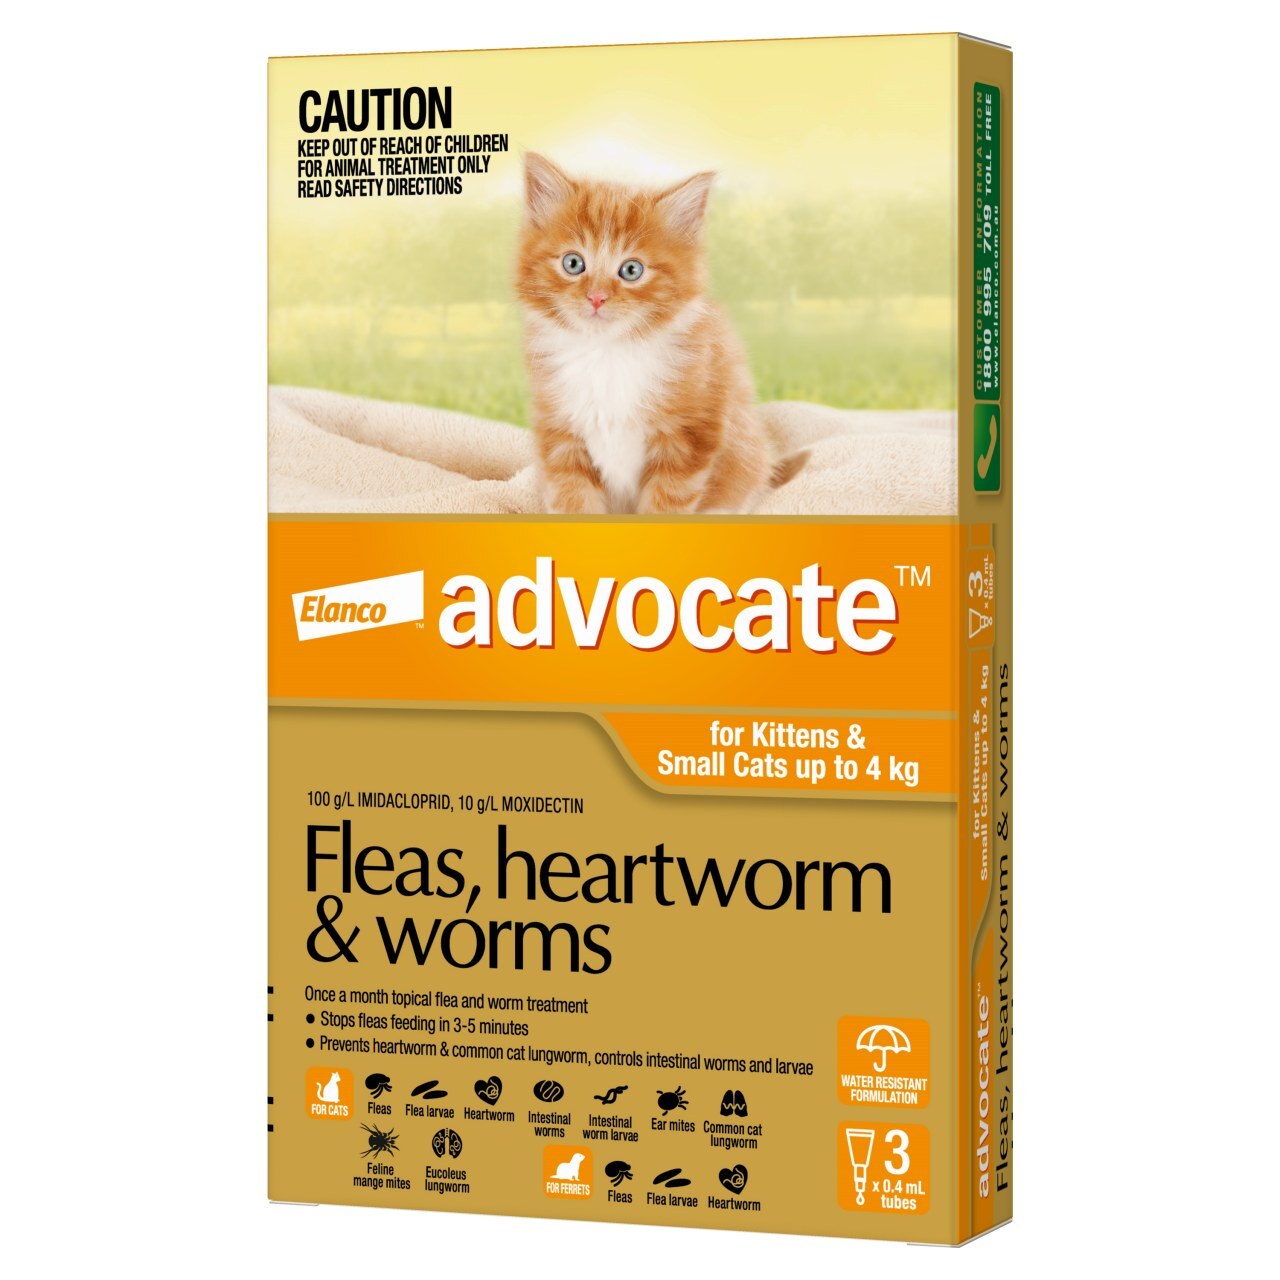 safecat worm meds